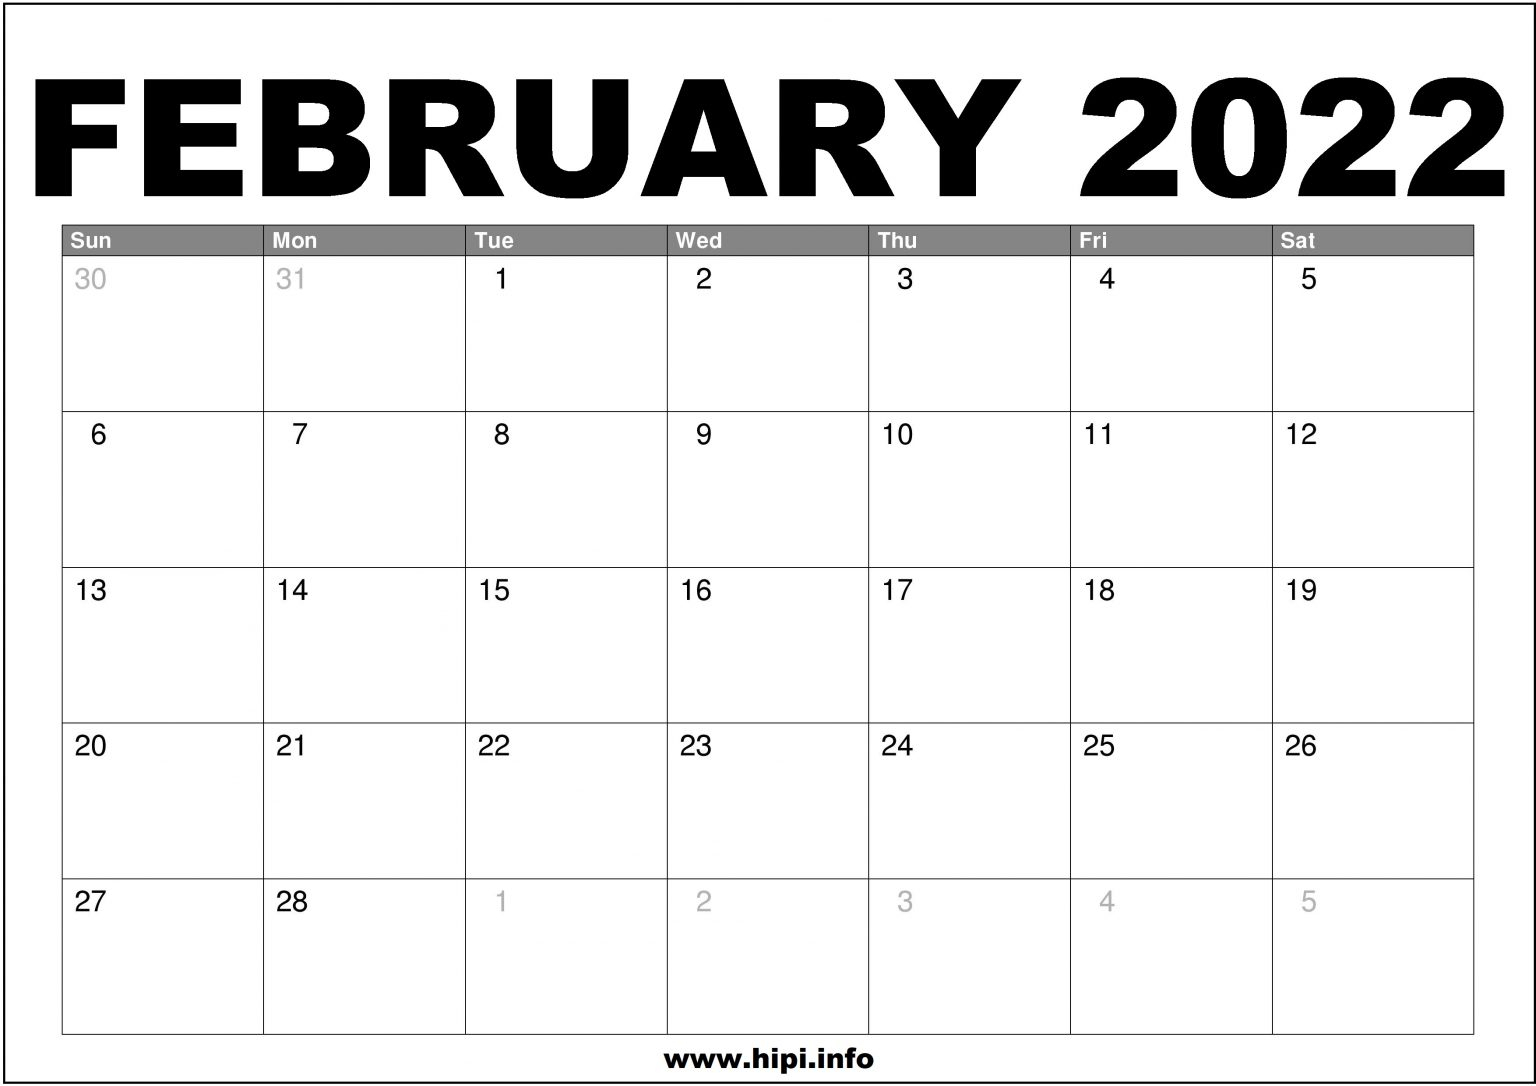 February 2022 Calendar Printable Free - Hipi